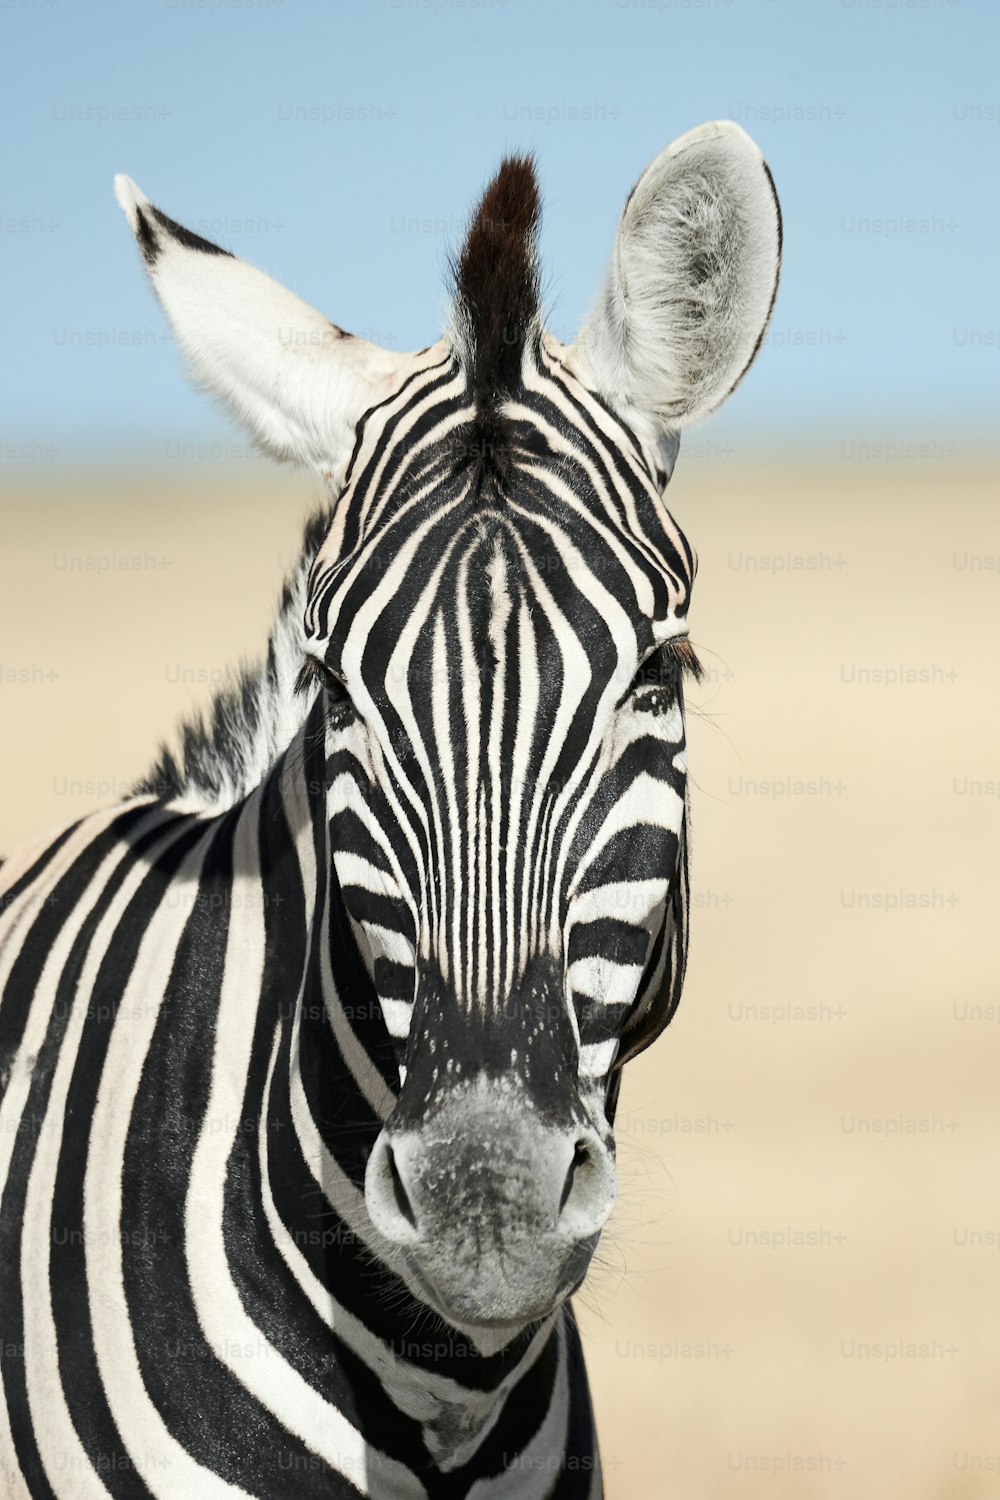 Ritratto di una bella zebra. Zebra fotografata in Namibia.